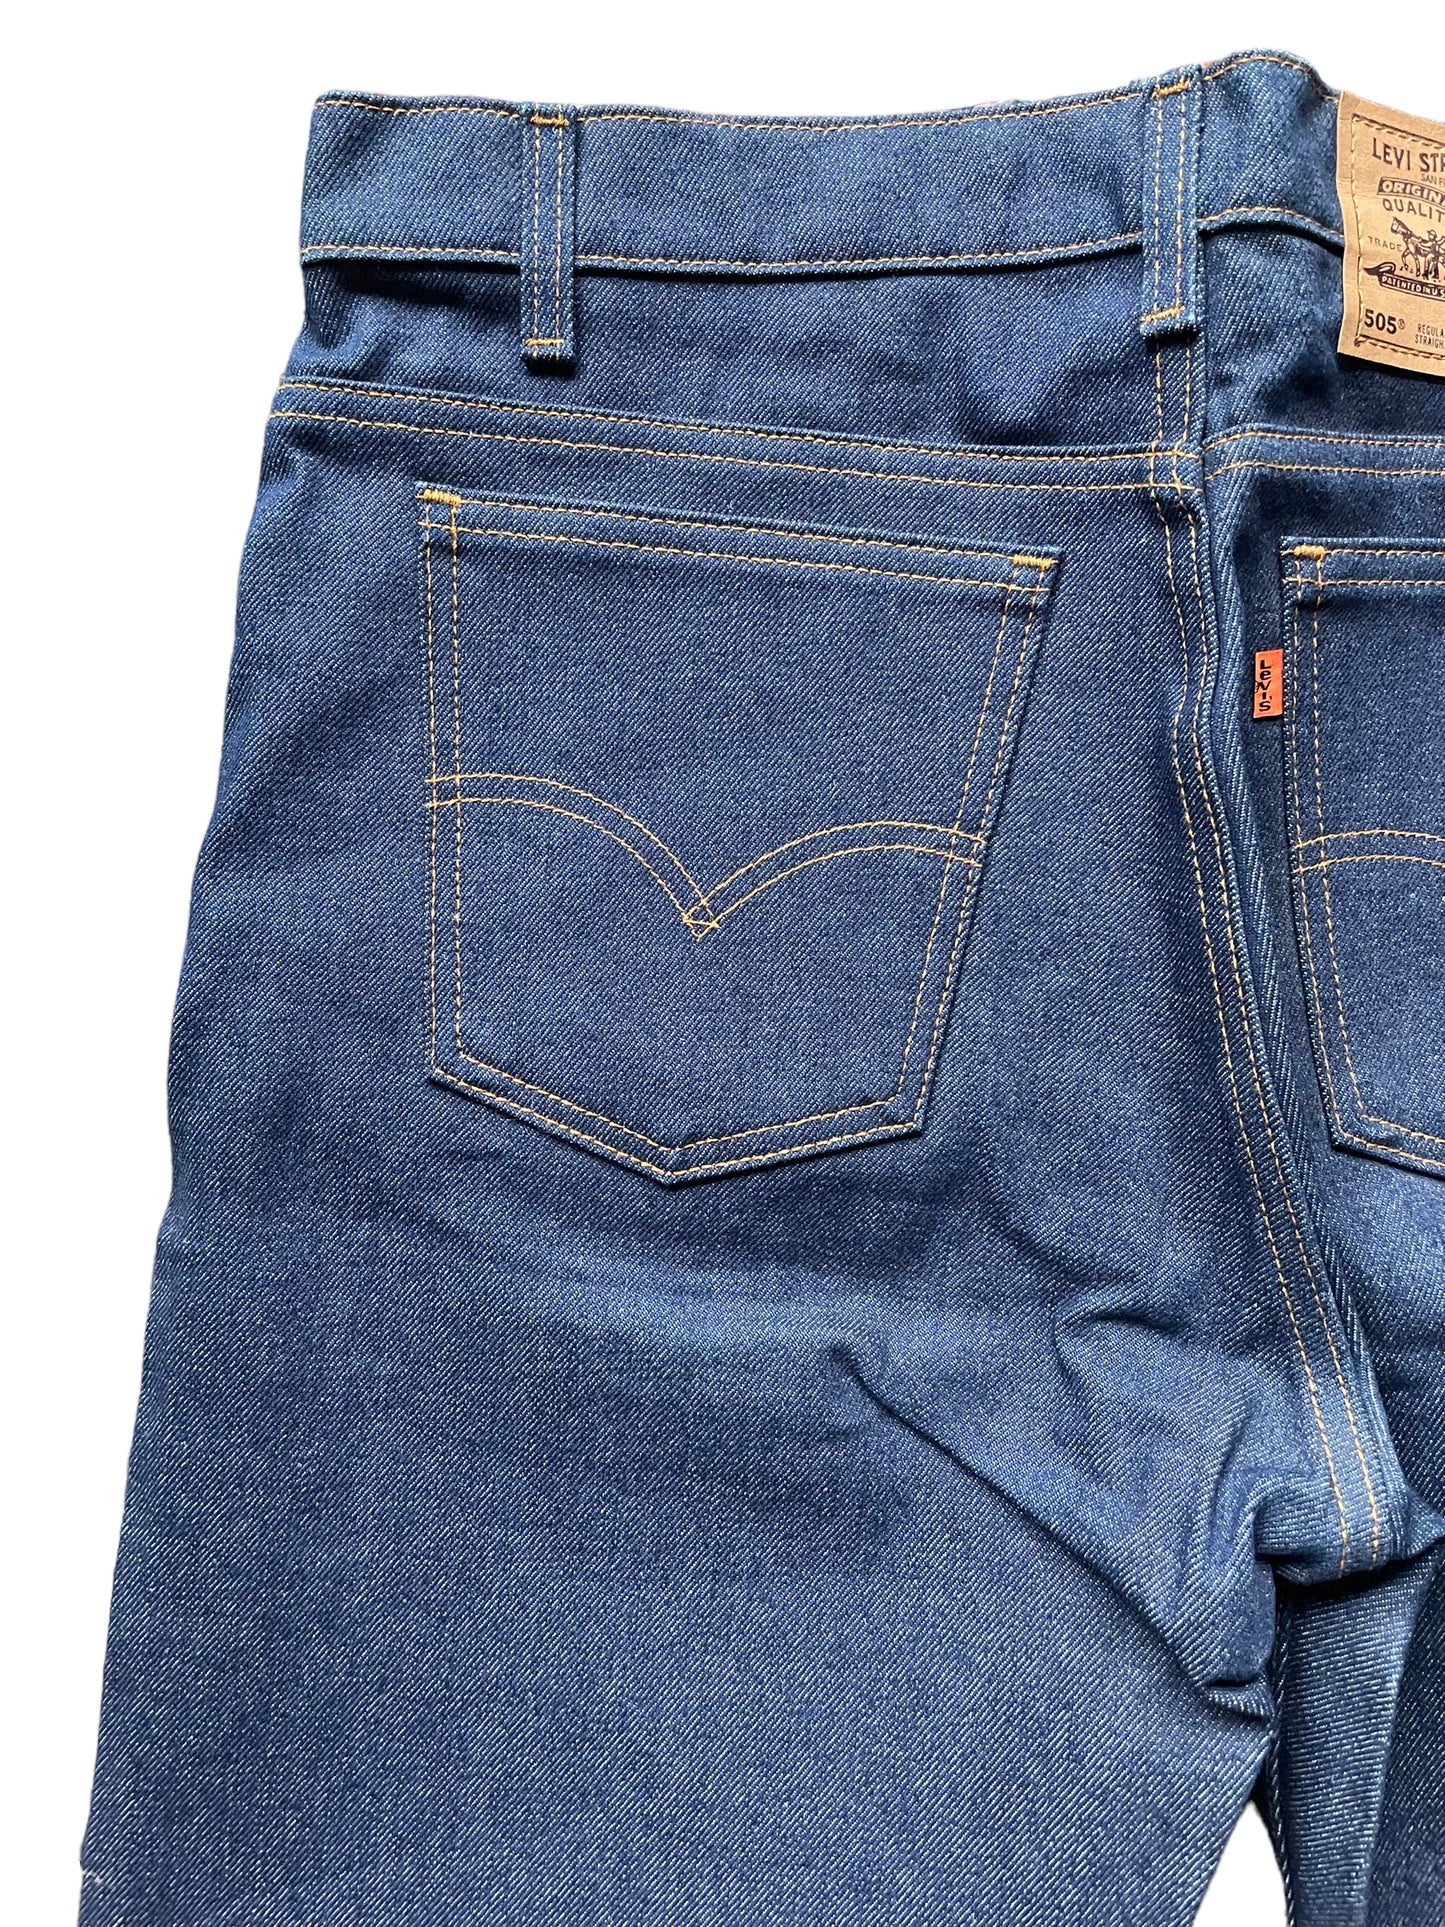 Back left pocket view of Vintage Deadstock 80s Levi's 505 Jeans | Seattle Vintage Levi's | Barn Owl True Vintage